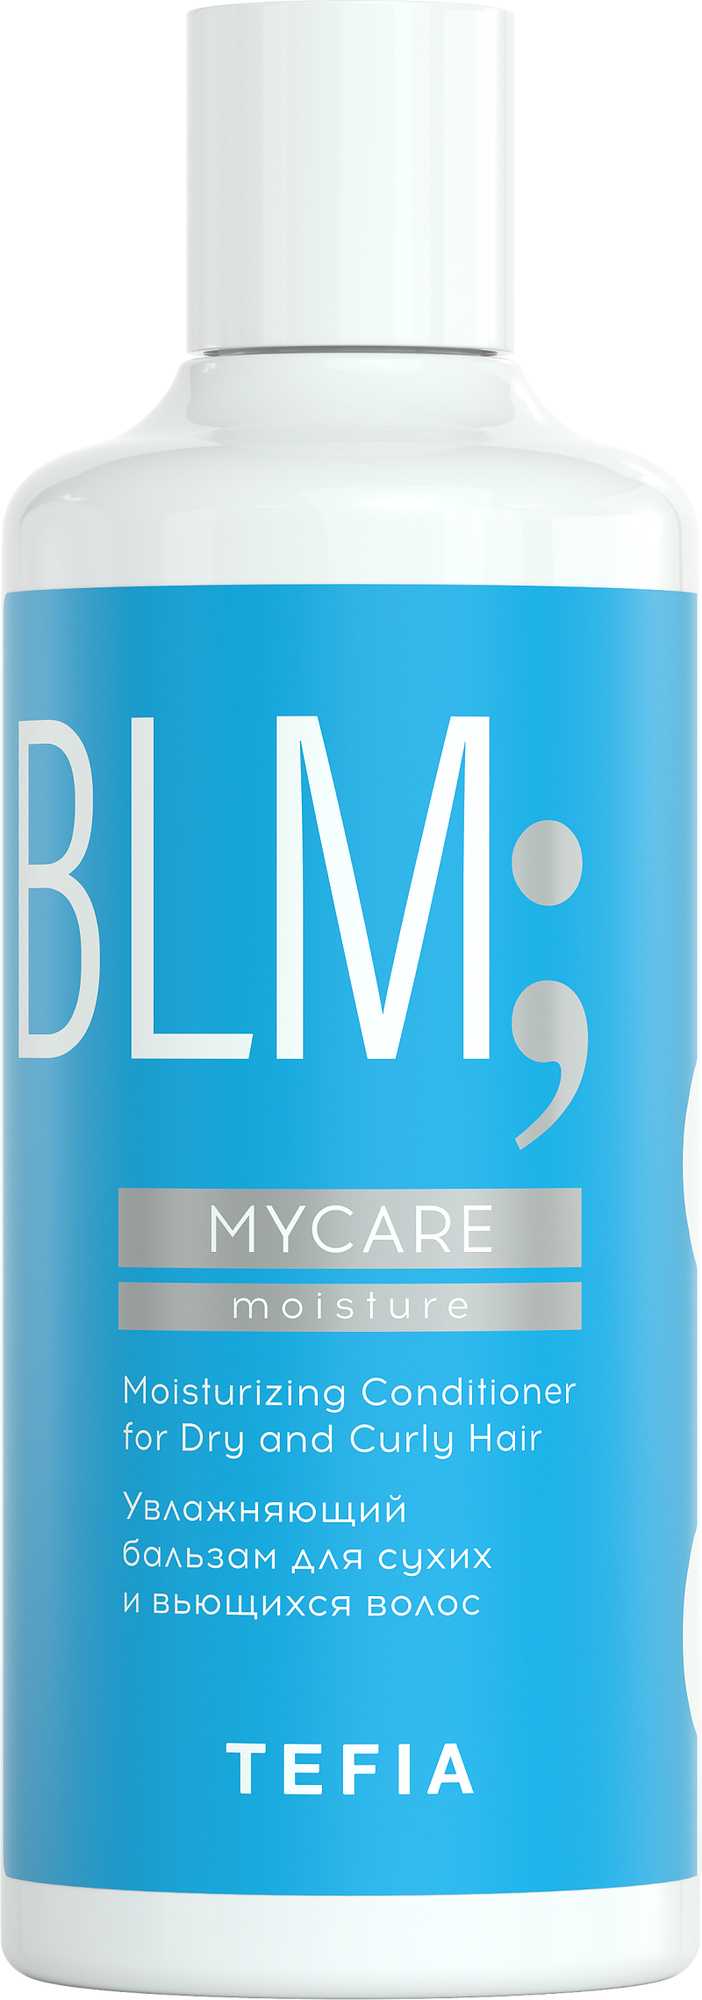 Бальзам увлажняющий для сухих и вьющихся волос / Mycare MOISTURE 300 мл